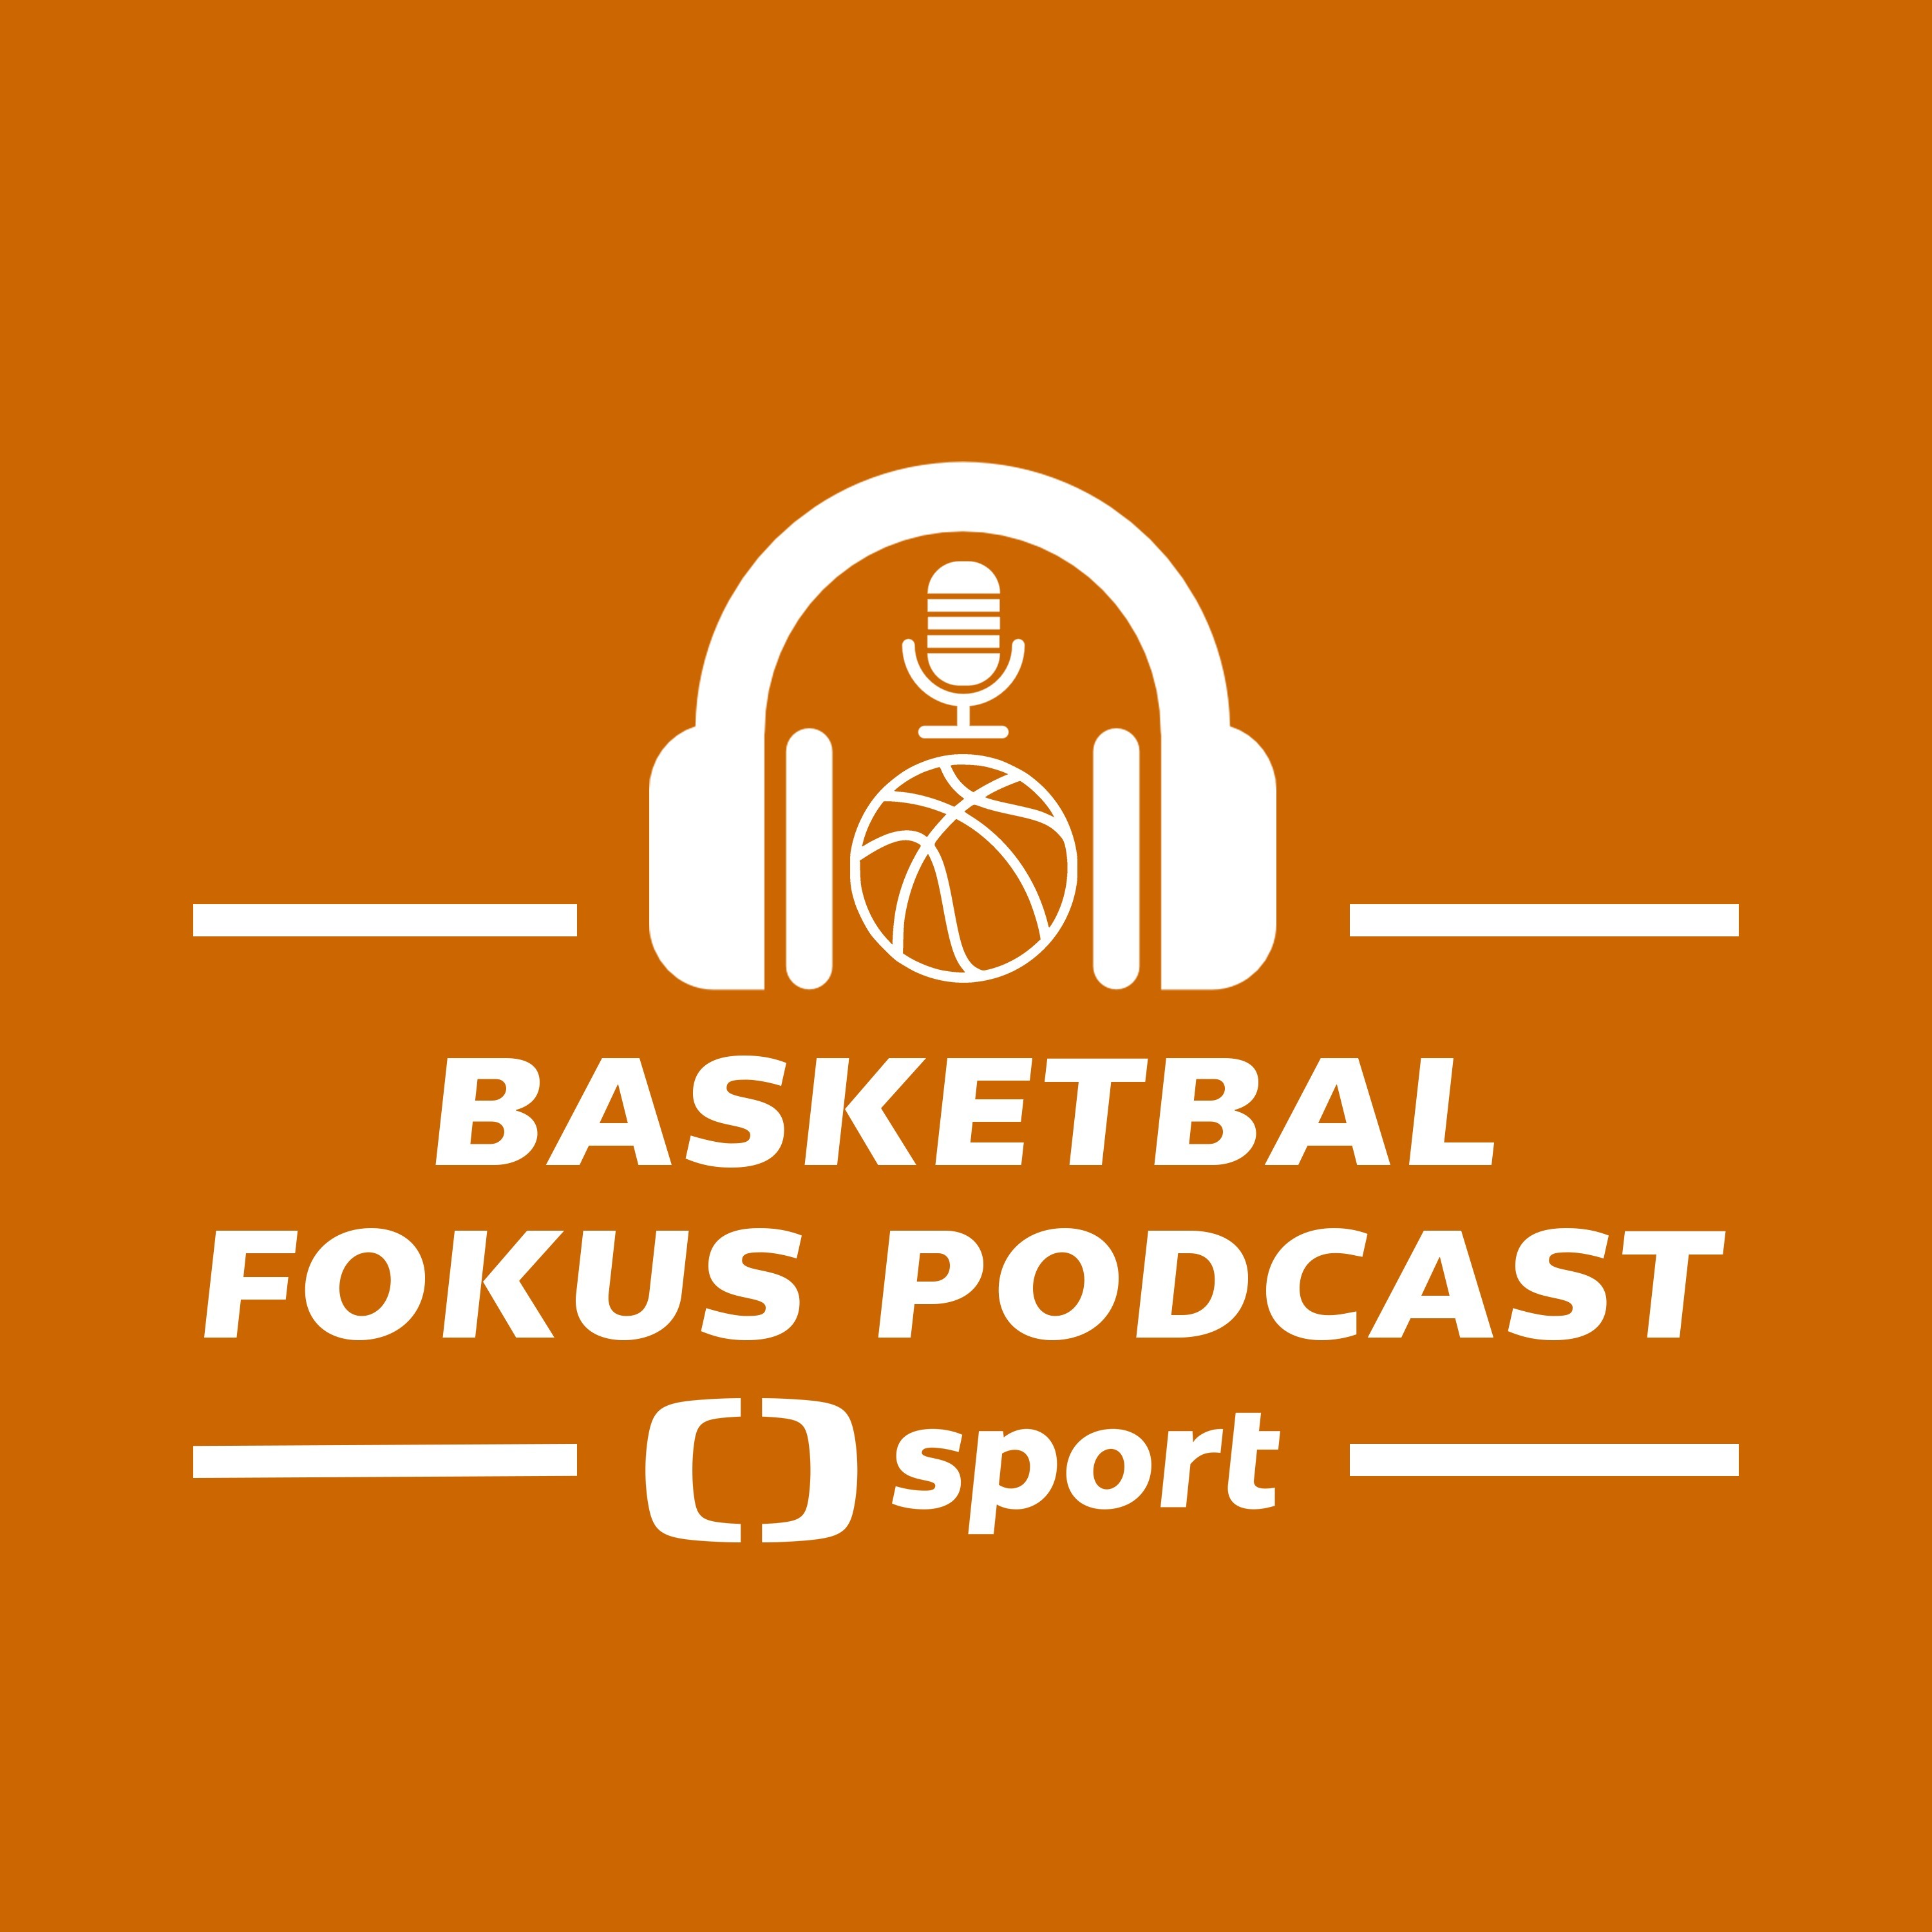 Basketbal fokus podcast: Dokáže Satoranský pomoct Bulls k postupu do play-off NBA?